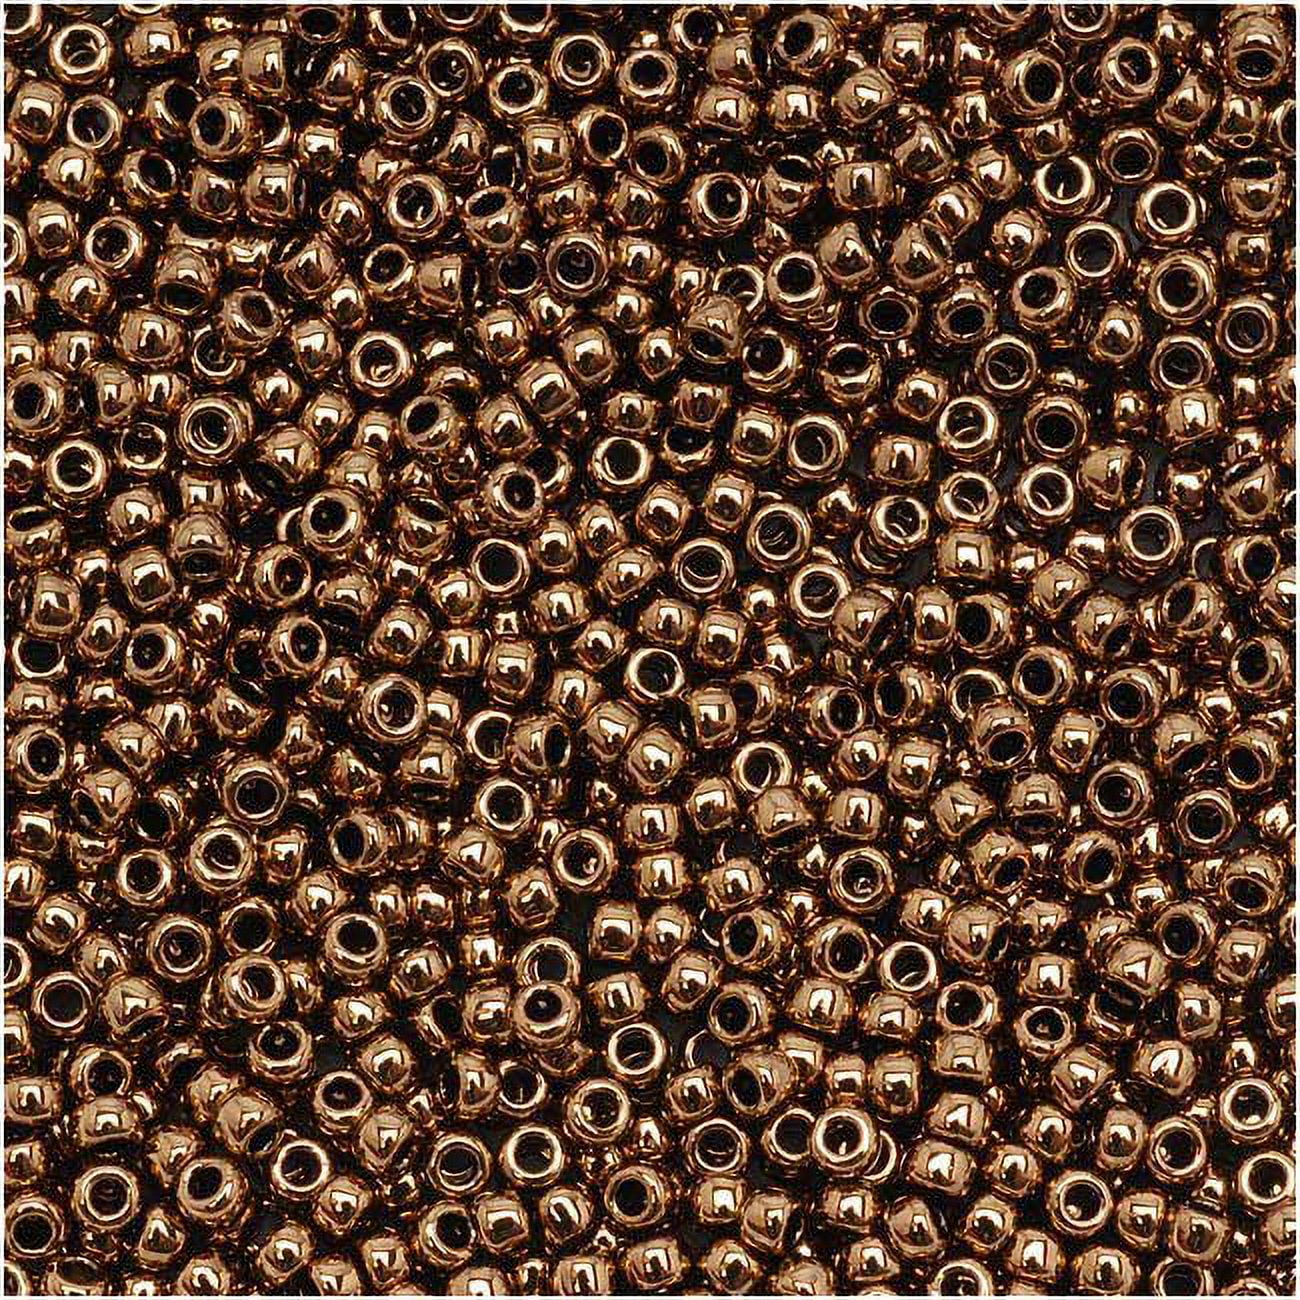 Toho Round Seed Beads 8/0 #221 'Bronze' 8 Gram Tube